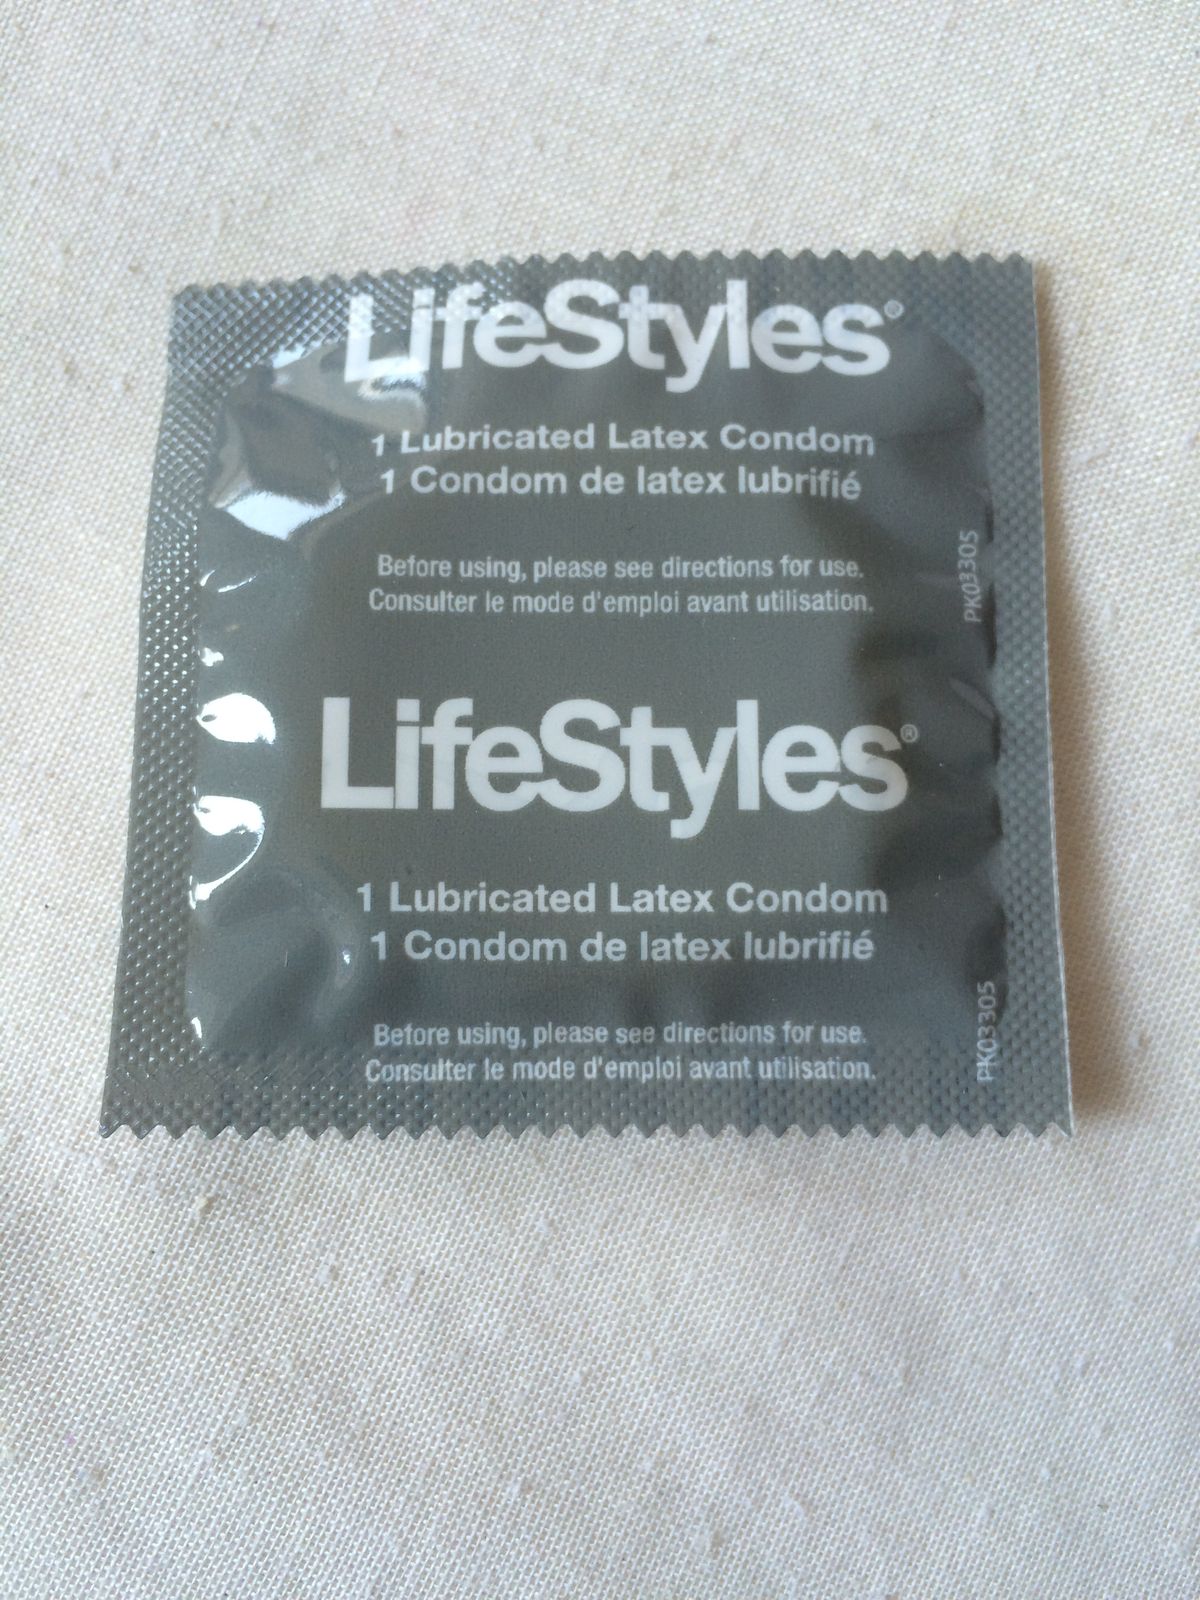 Probé 7 condones y así se comparan